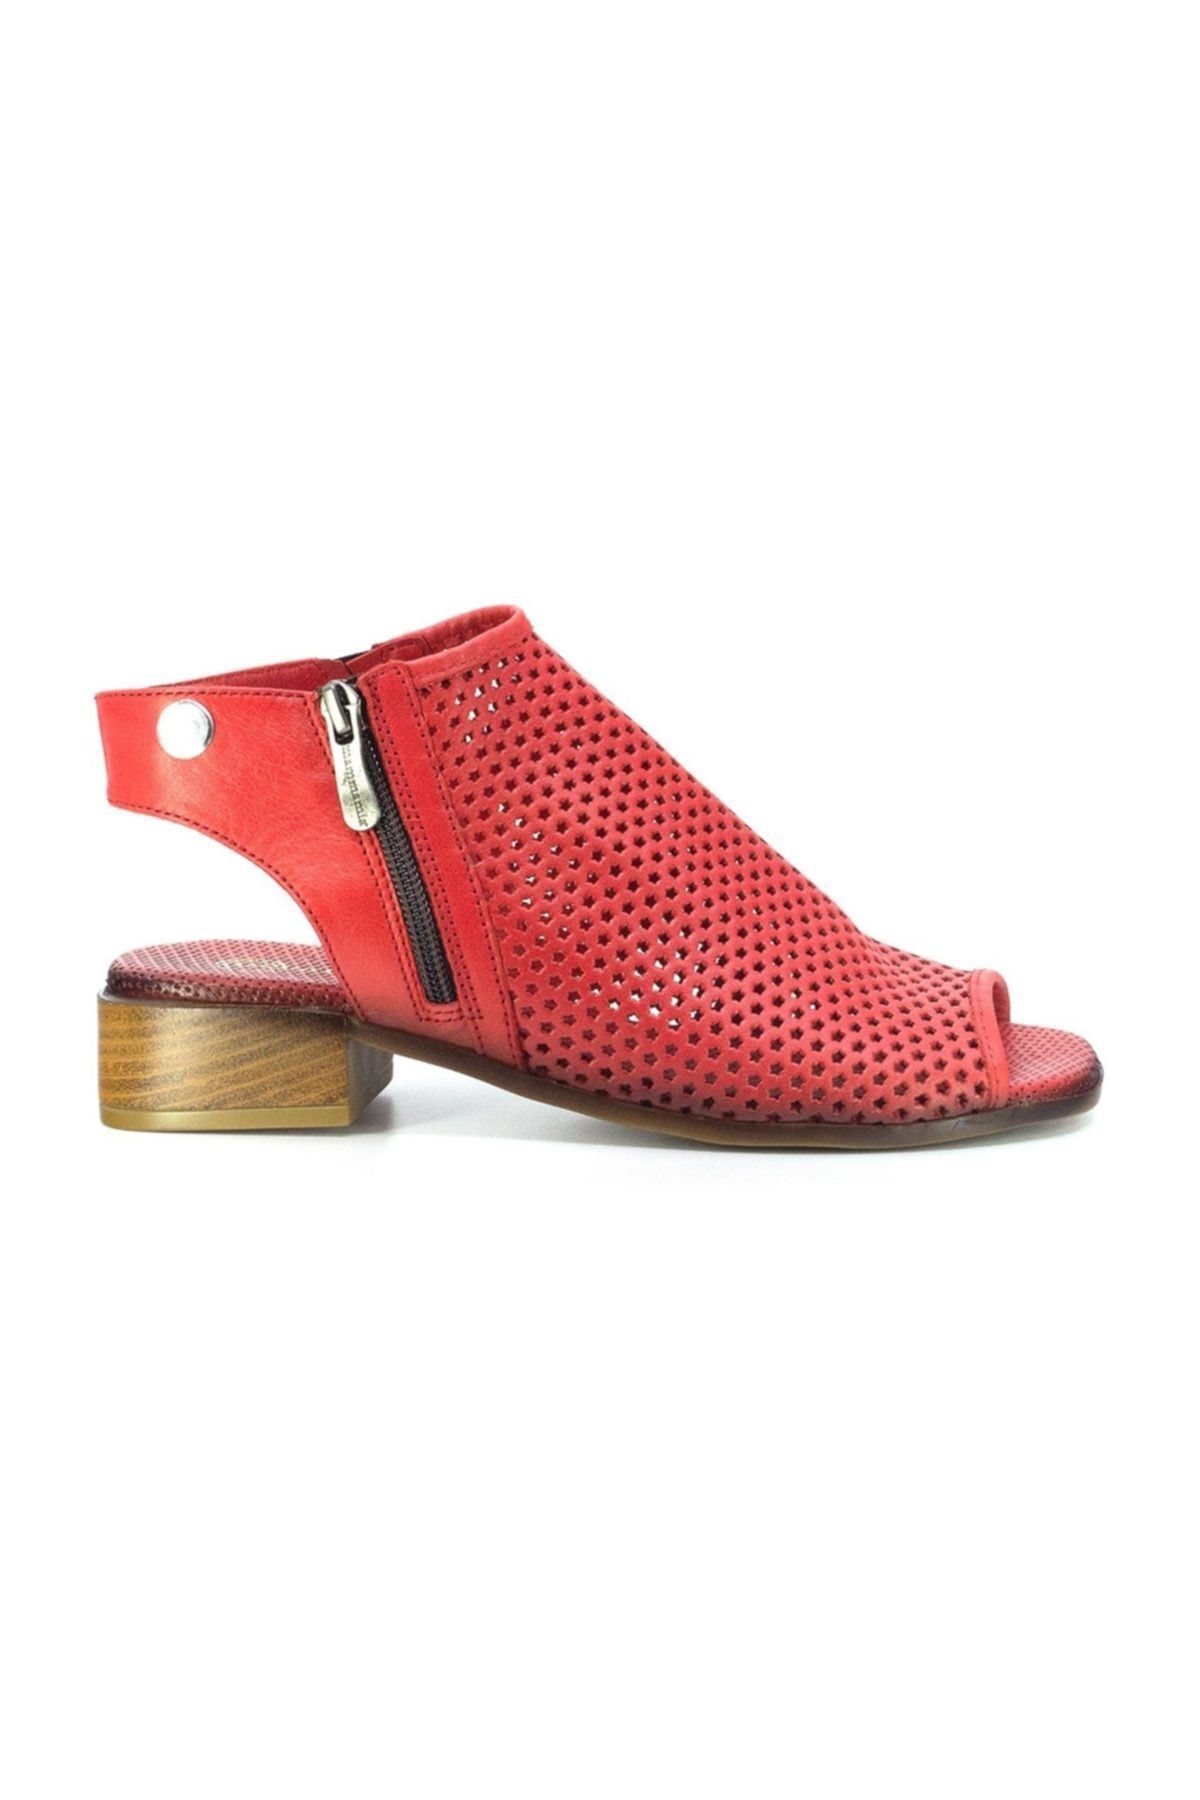 Mammamia D20ys-1105 Kadın Hakiki Deri Sandalet Kırmızı